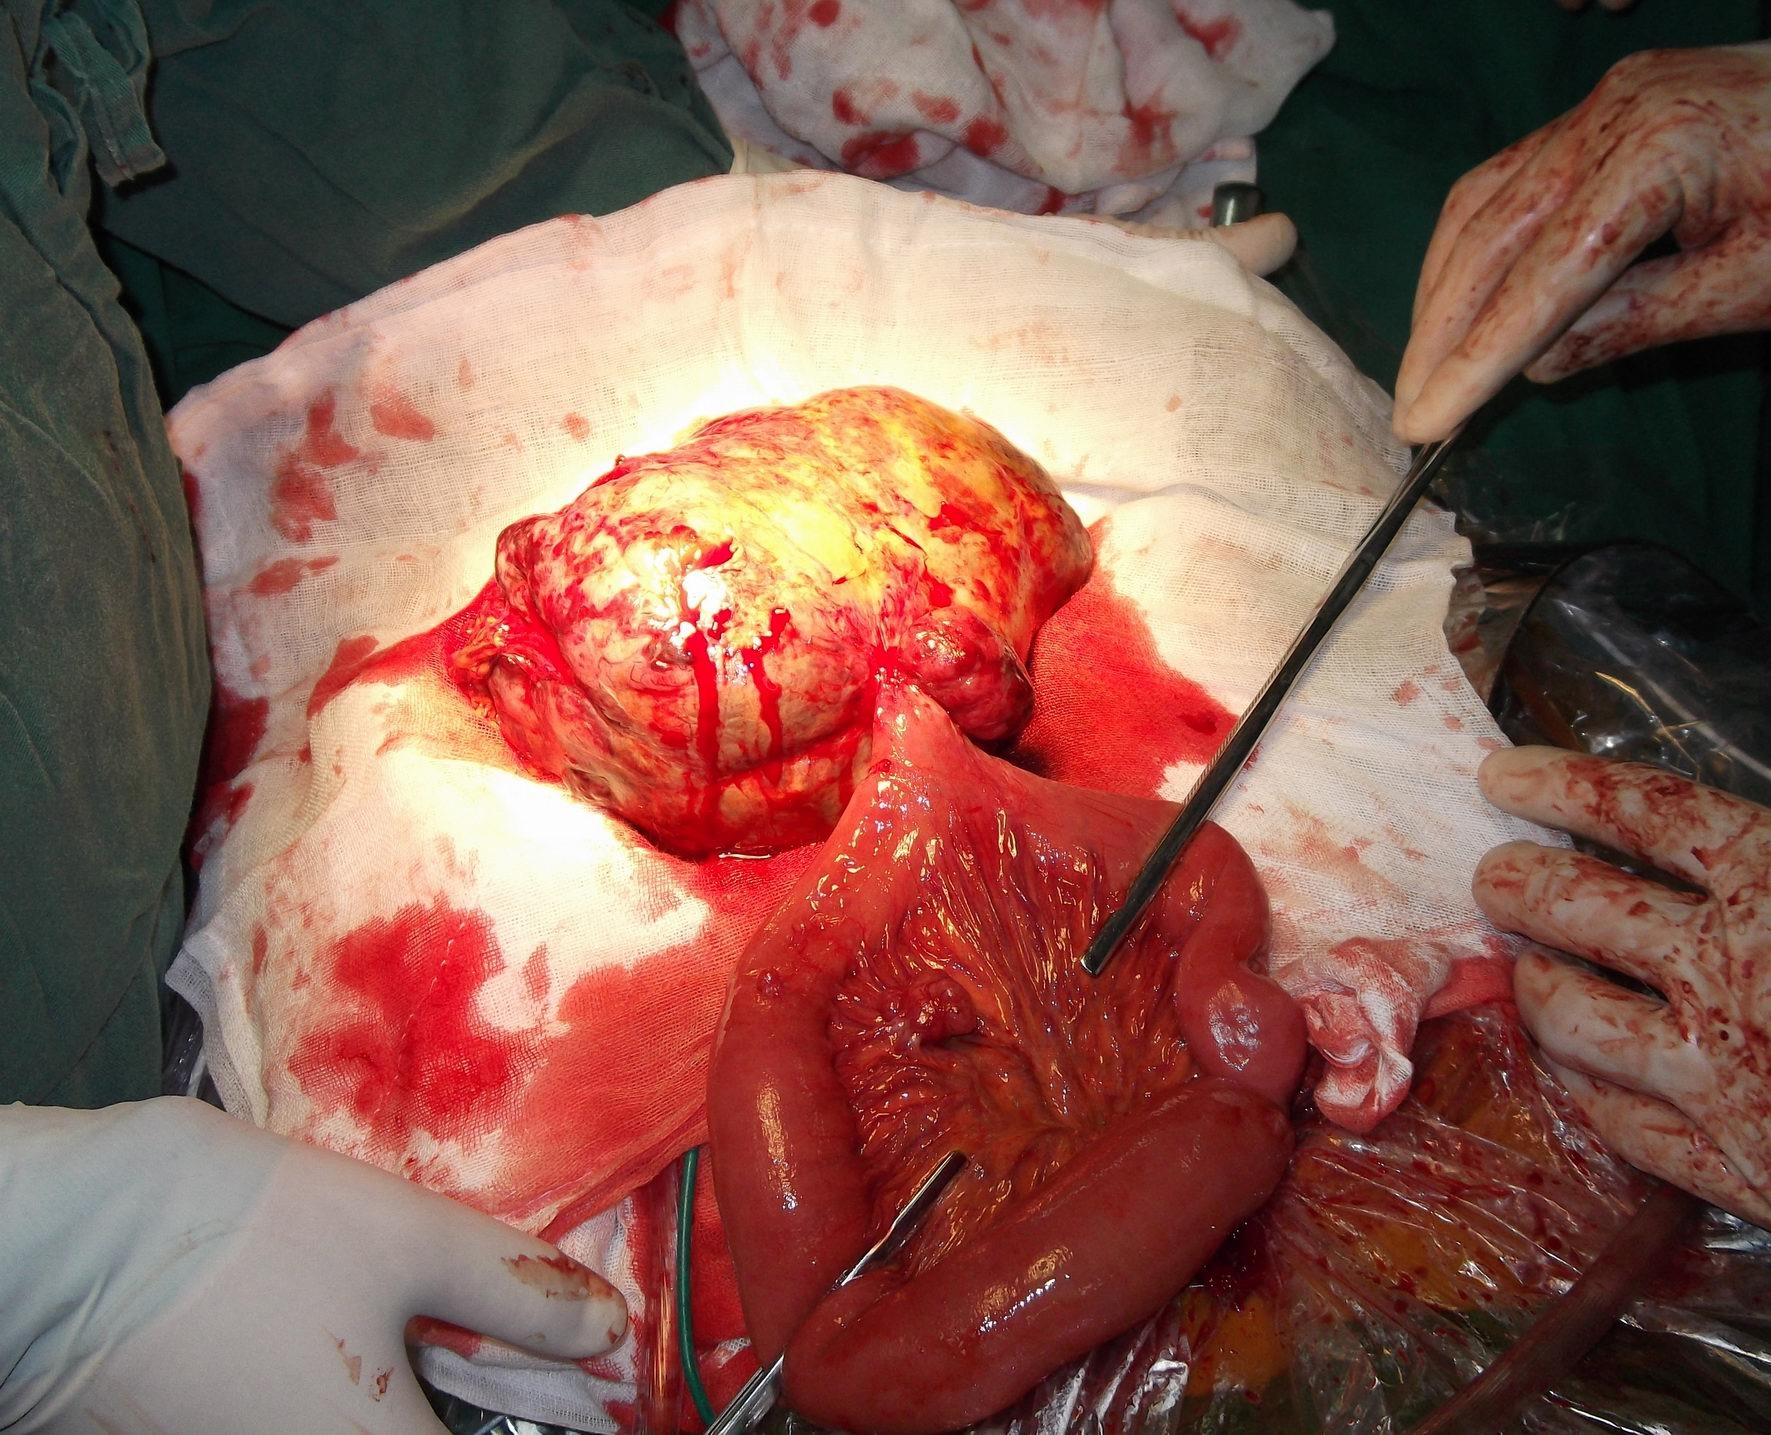 小肠间质瘤图片